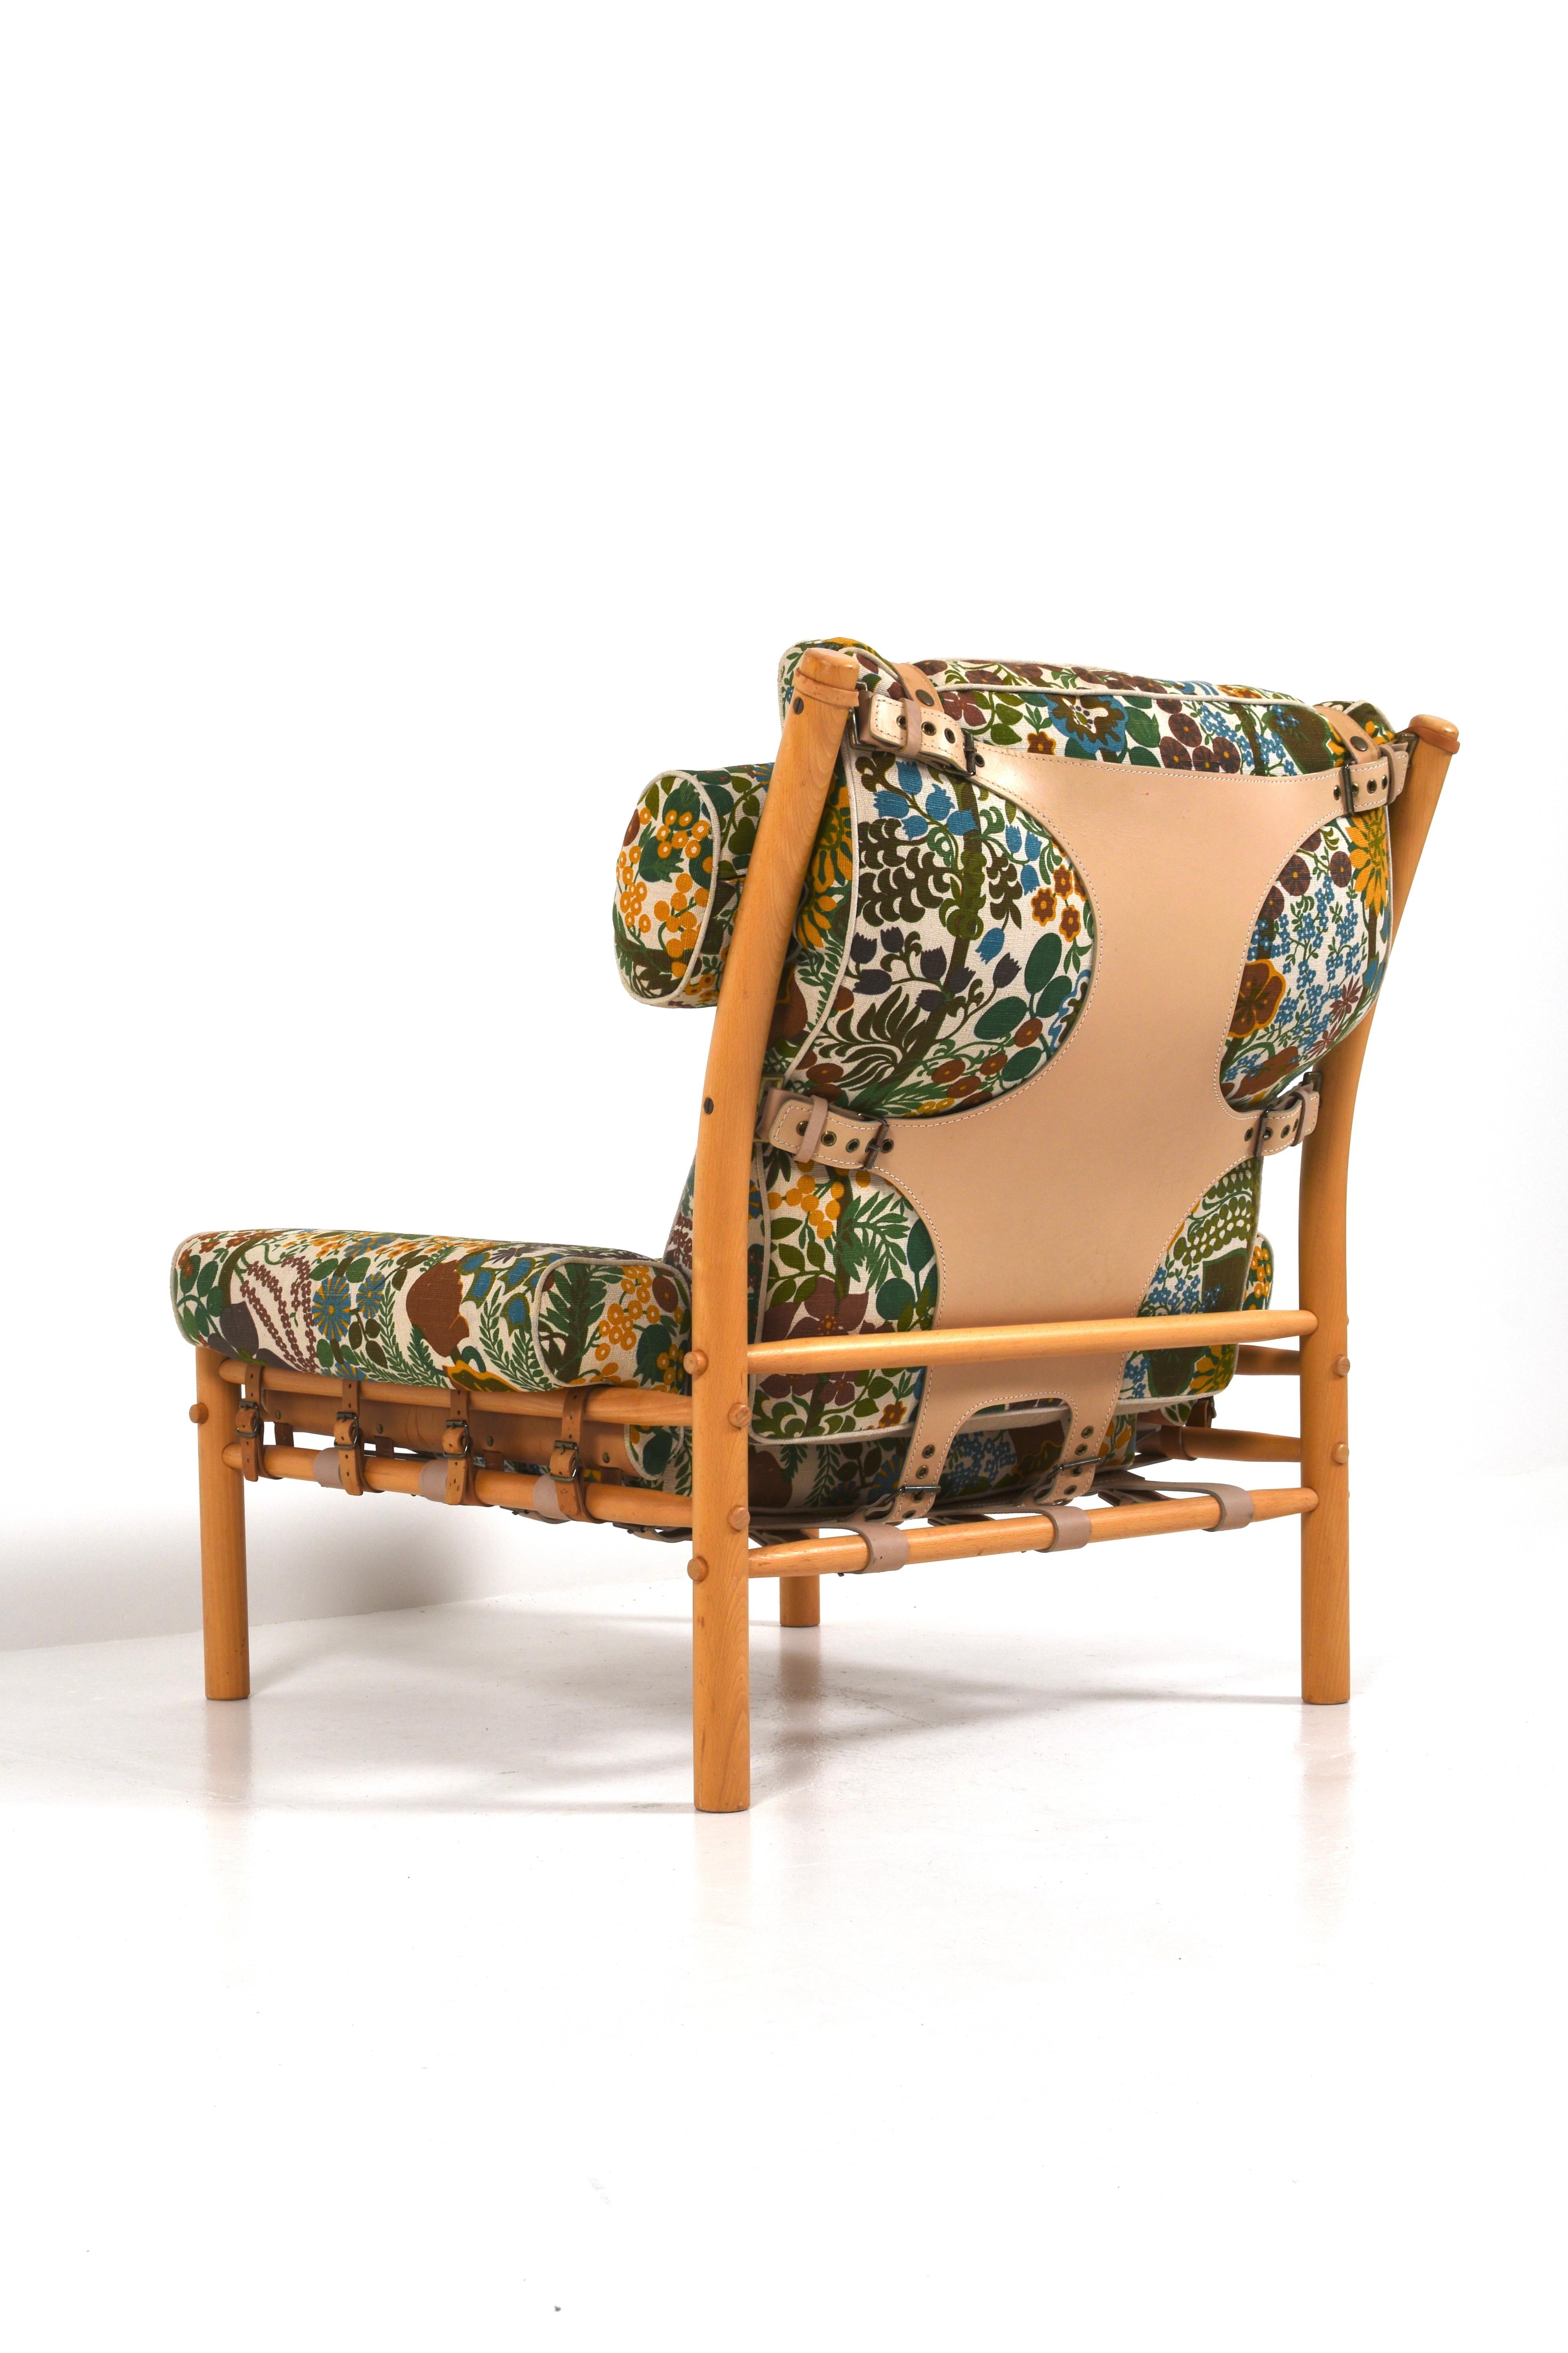 Arne Norells était un éminent designer de meubles suédois connu pour ses designs simples et élégants. Ses meubles se caractérisent souvent par une grande qualité, l'utilisation de matériaux naturels et une esthétique intemporelle.

Le fauteuil que